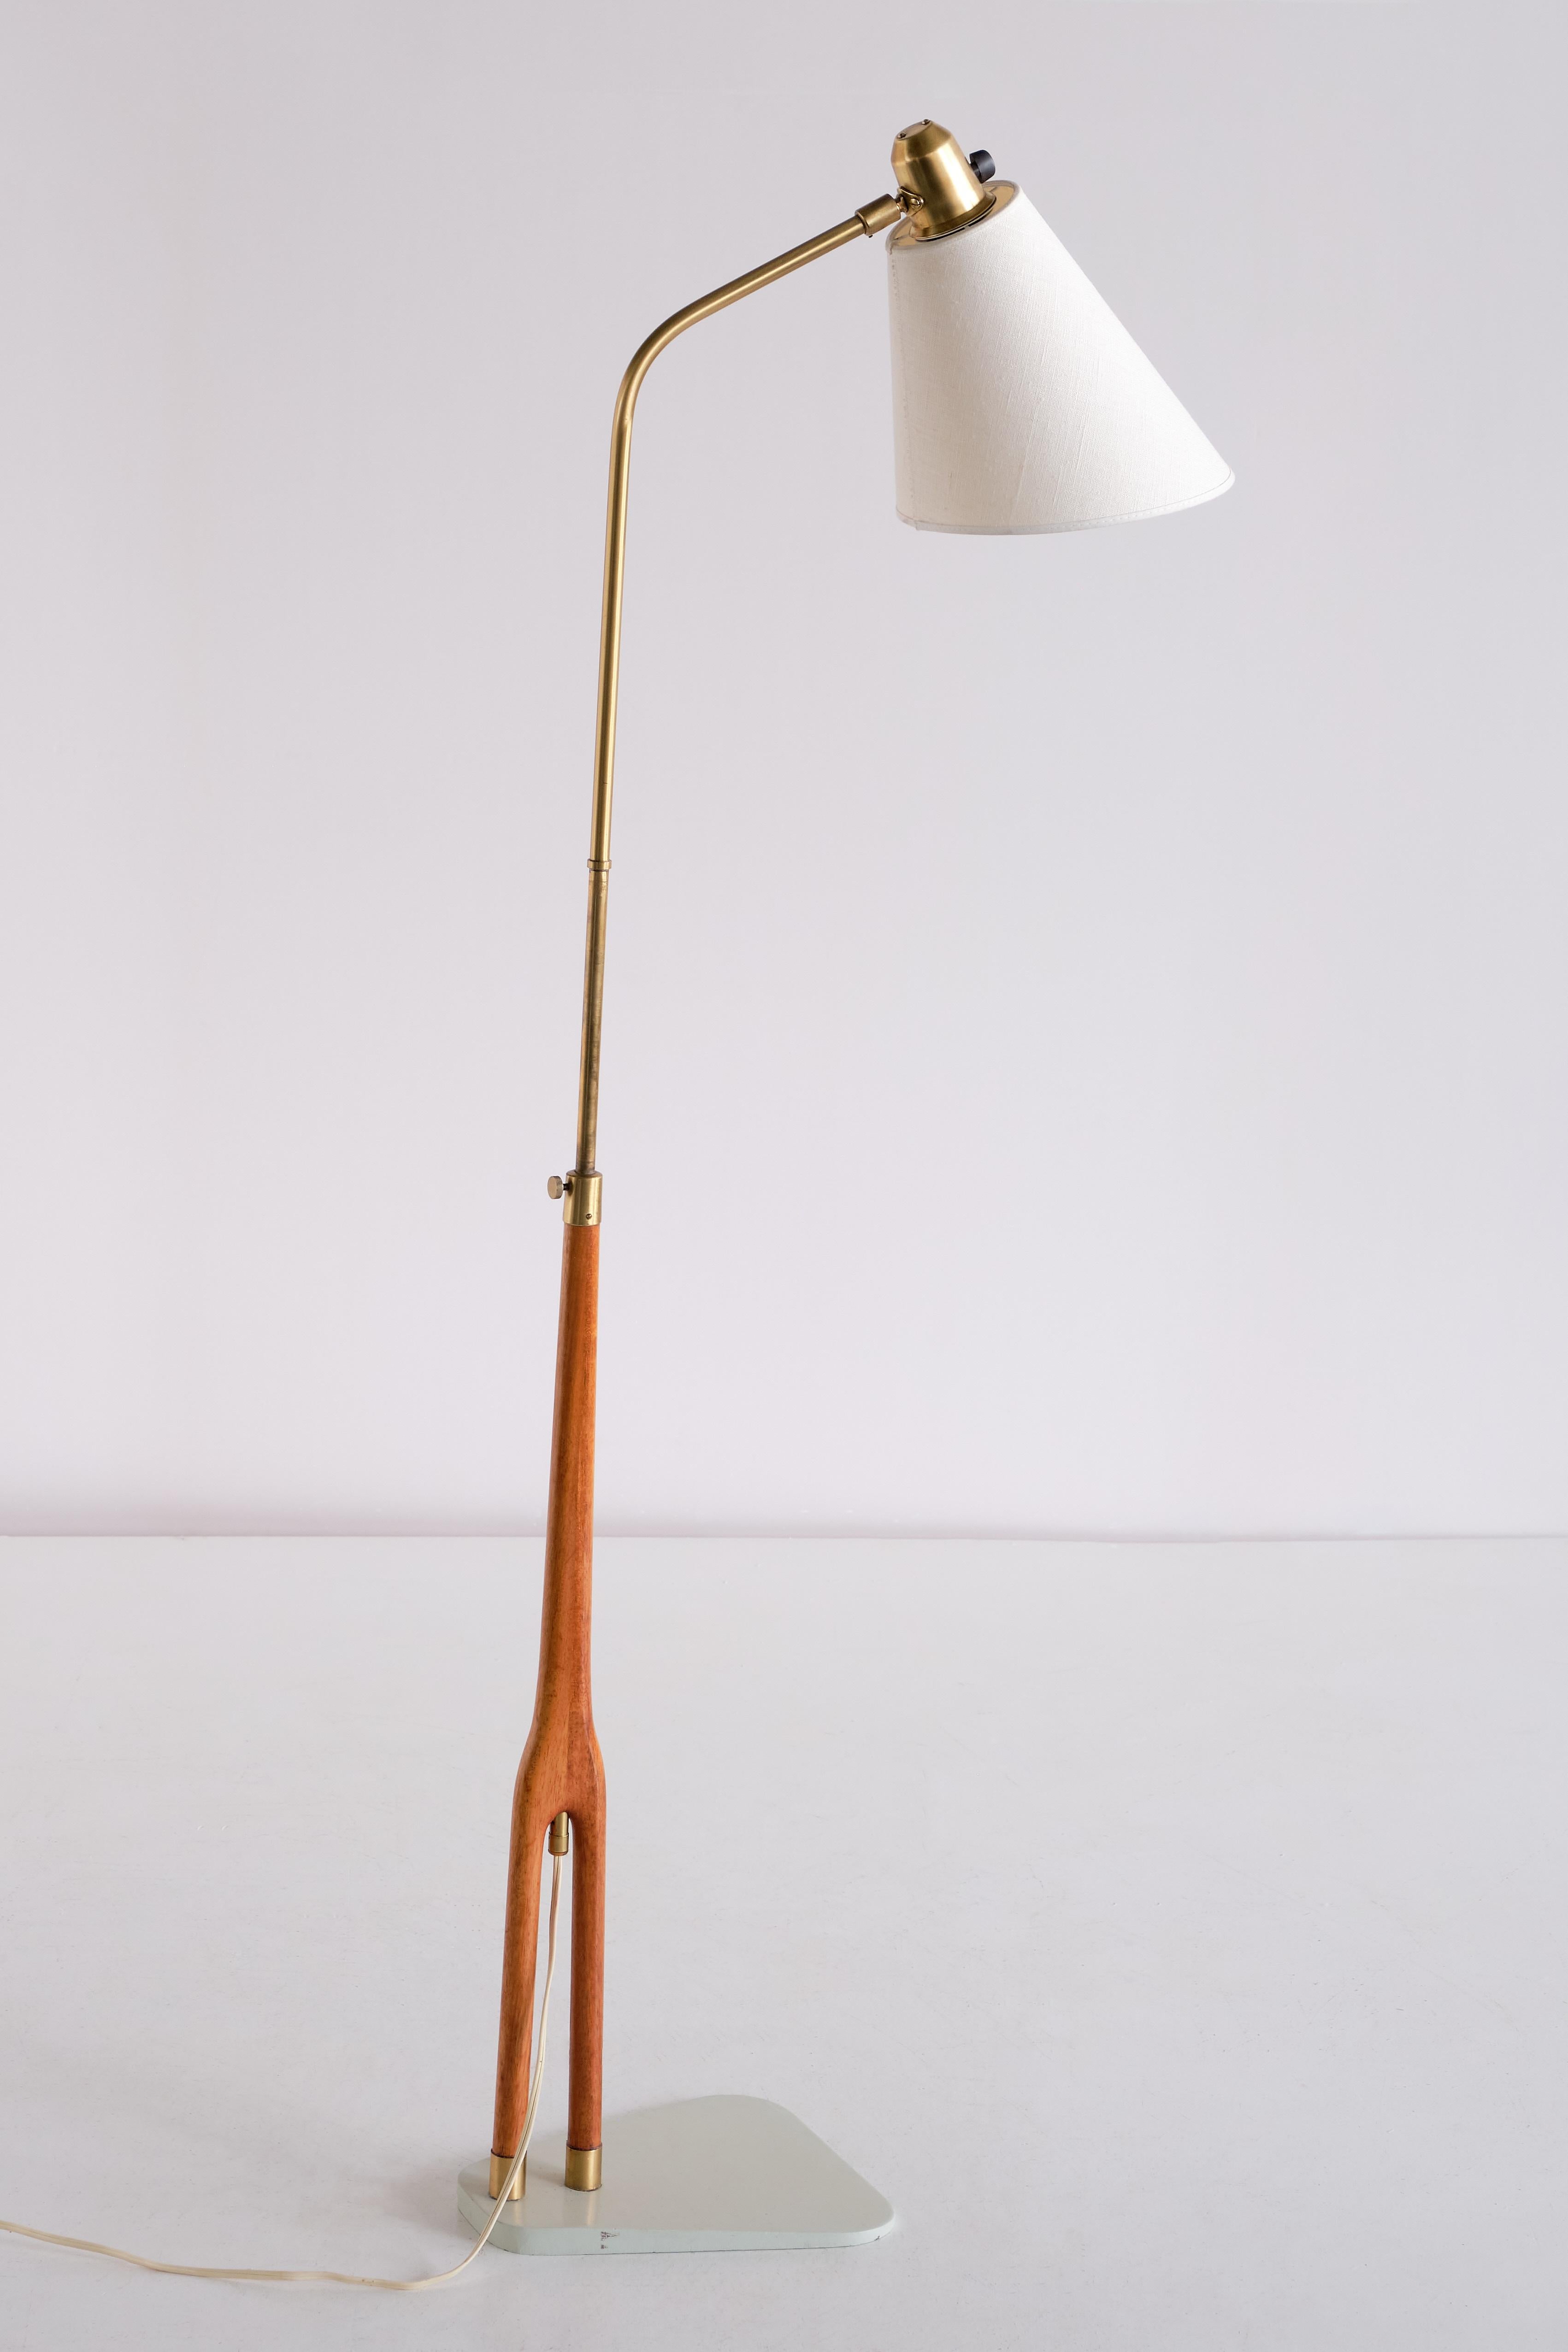 Hans Bergström Floor Lamp in Teak and Brass, ASEA, Sweden, 1950s For Sale 4